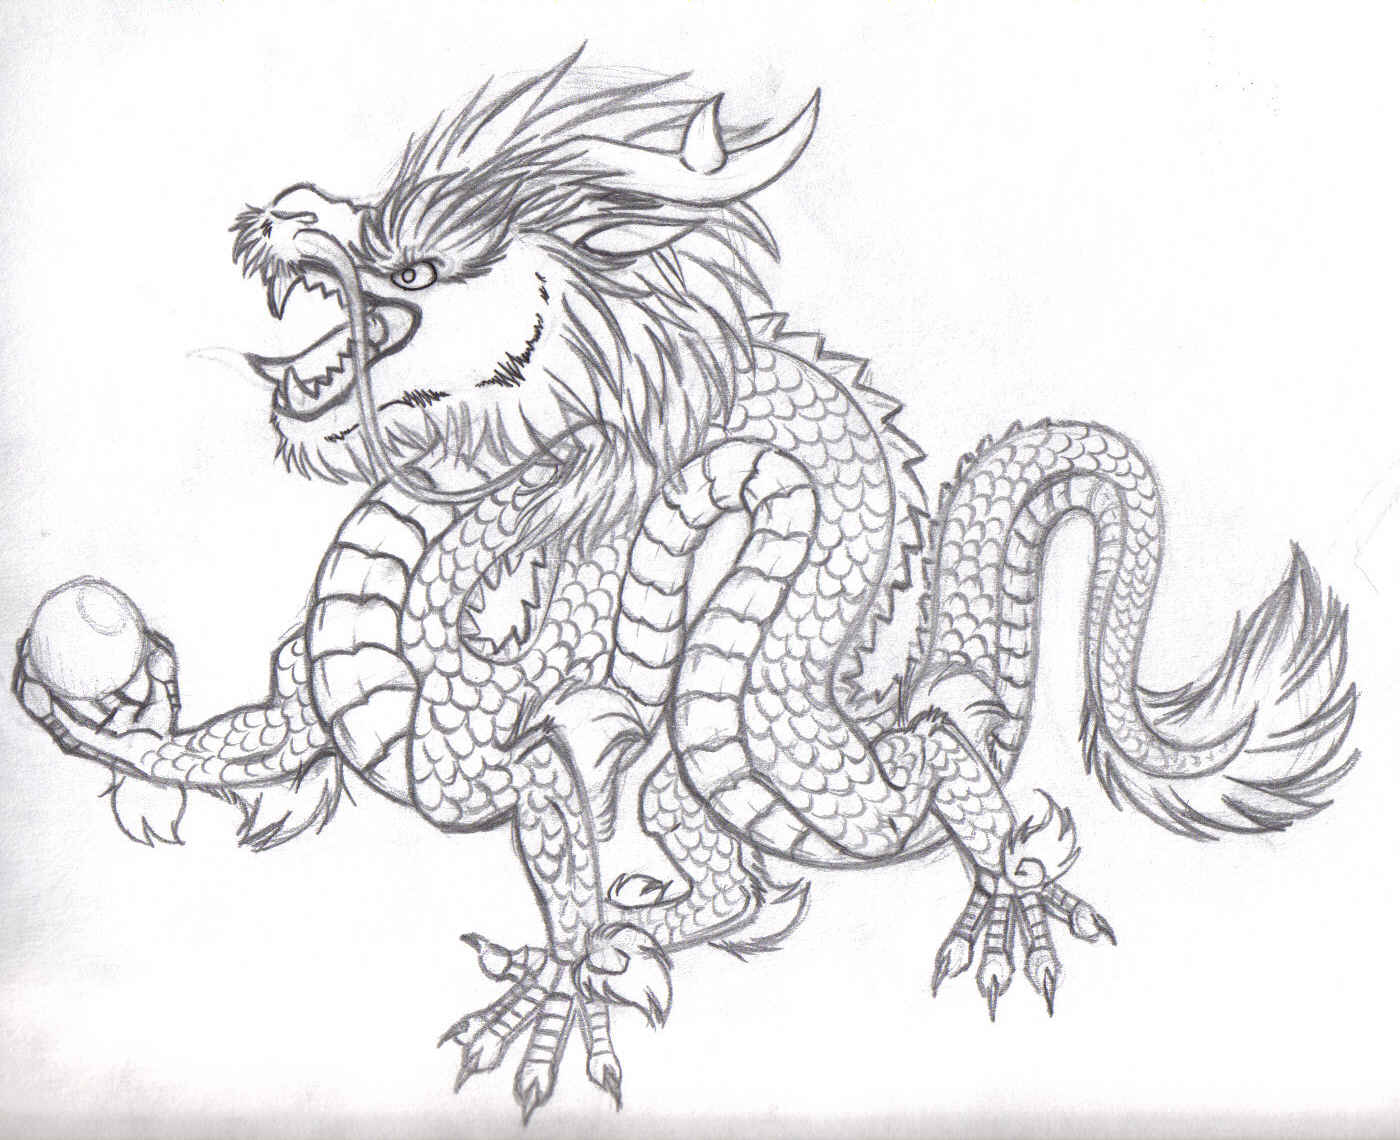 Chinese Dragon Drawing Images  Free Download on Freepik